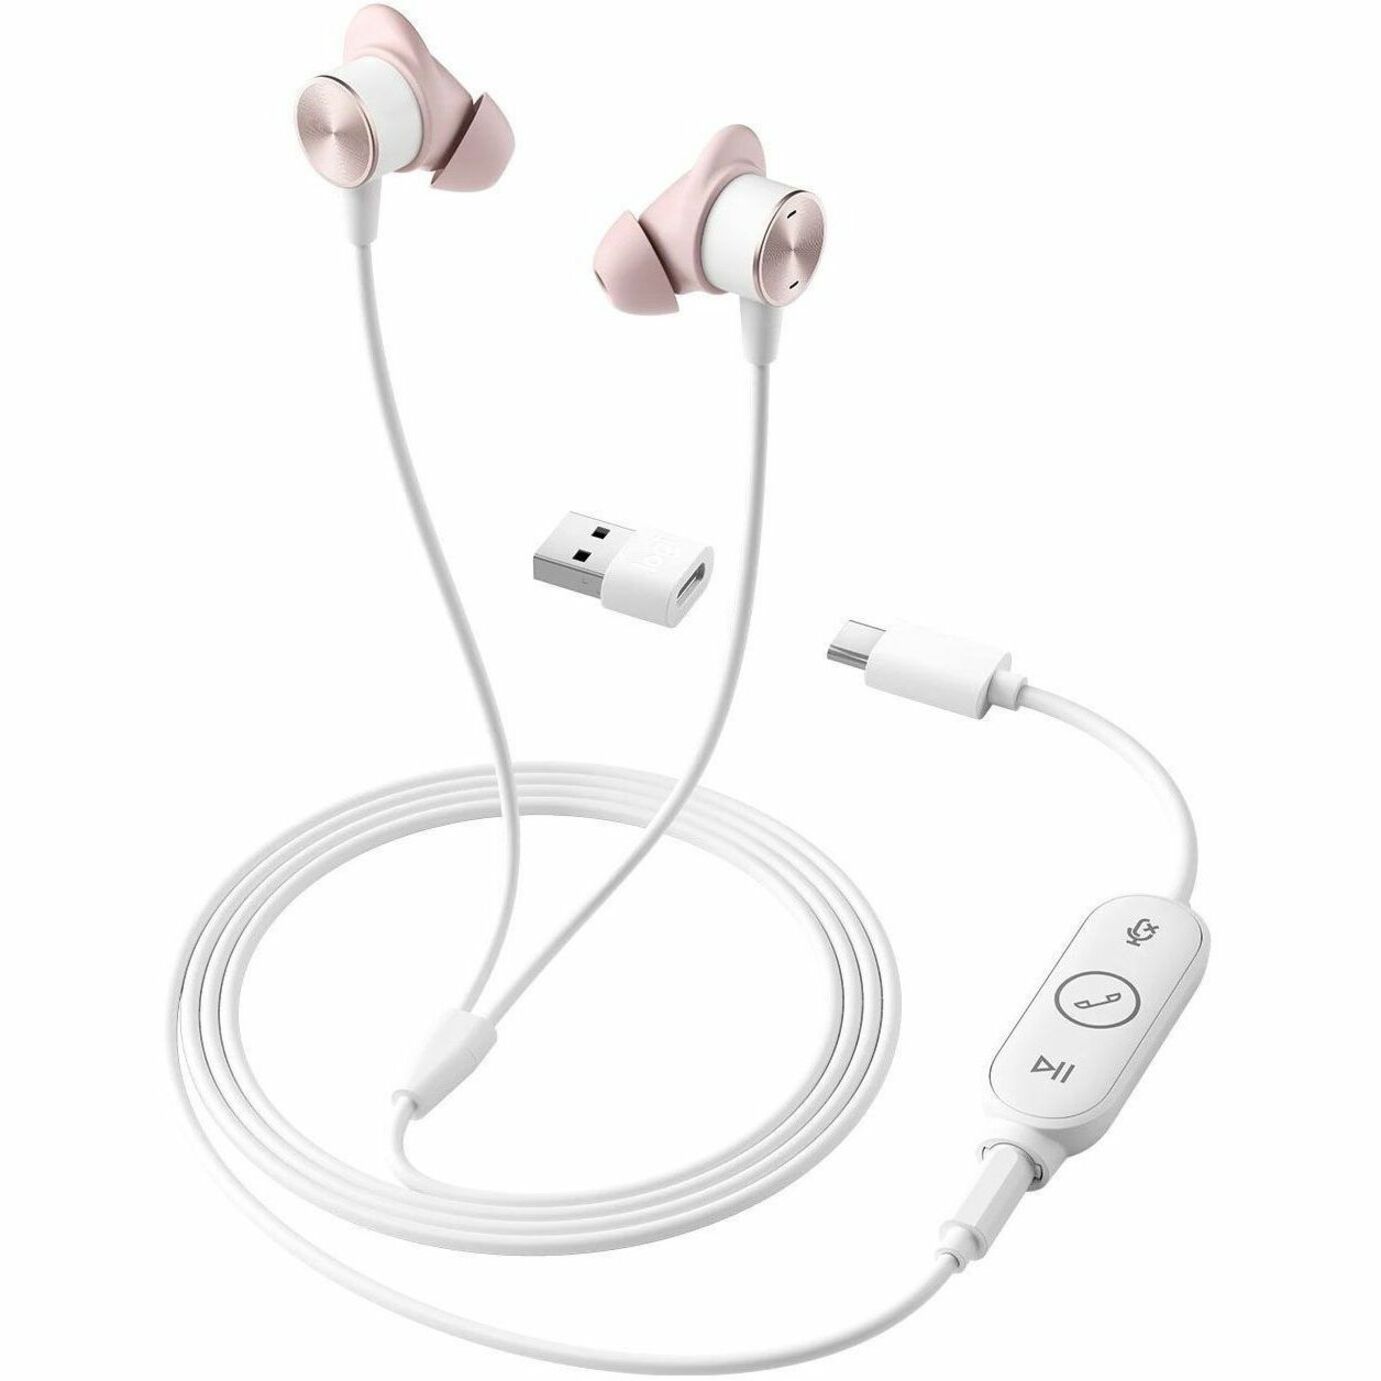 罗技 981-001134 区域有线耳塞，双耳耳机，带消噪麦克风，USB-C连接器，玫瑰色 罗技 - 罗技